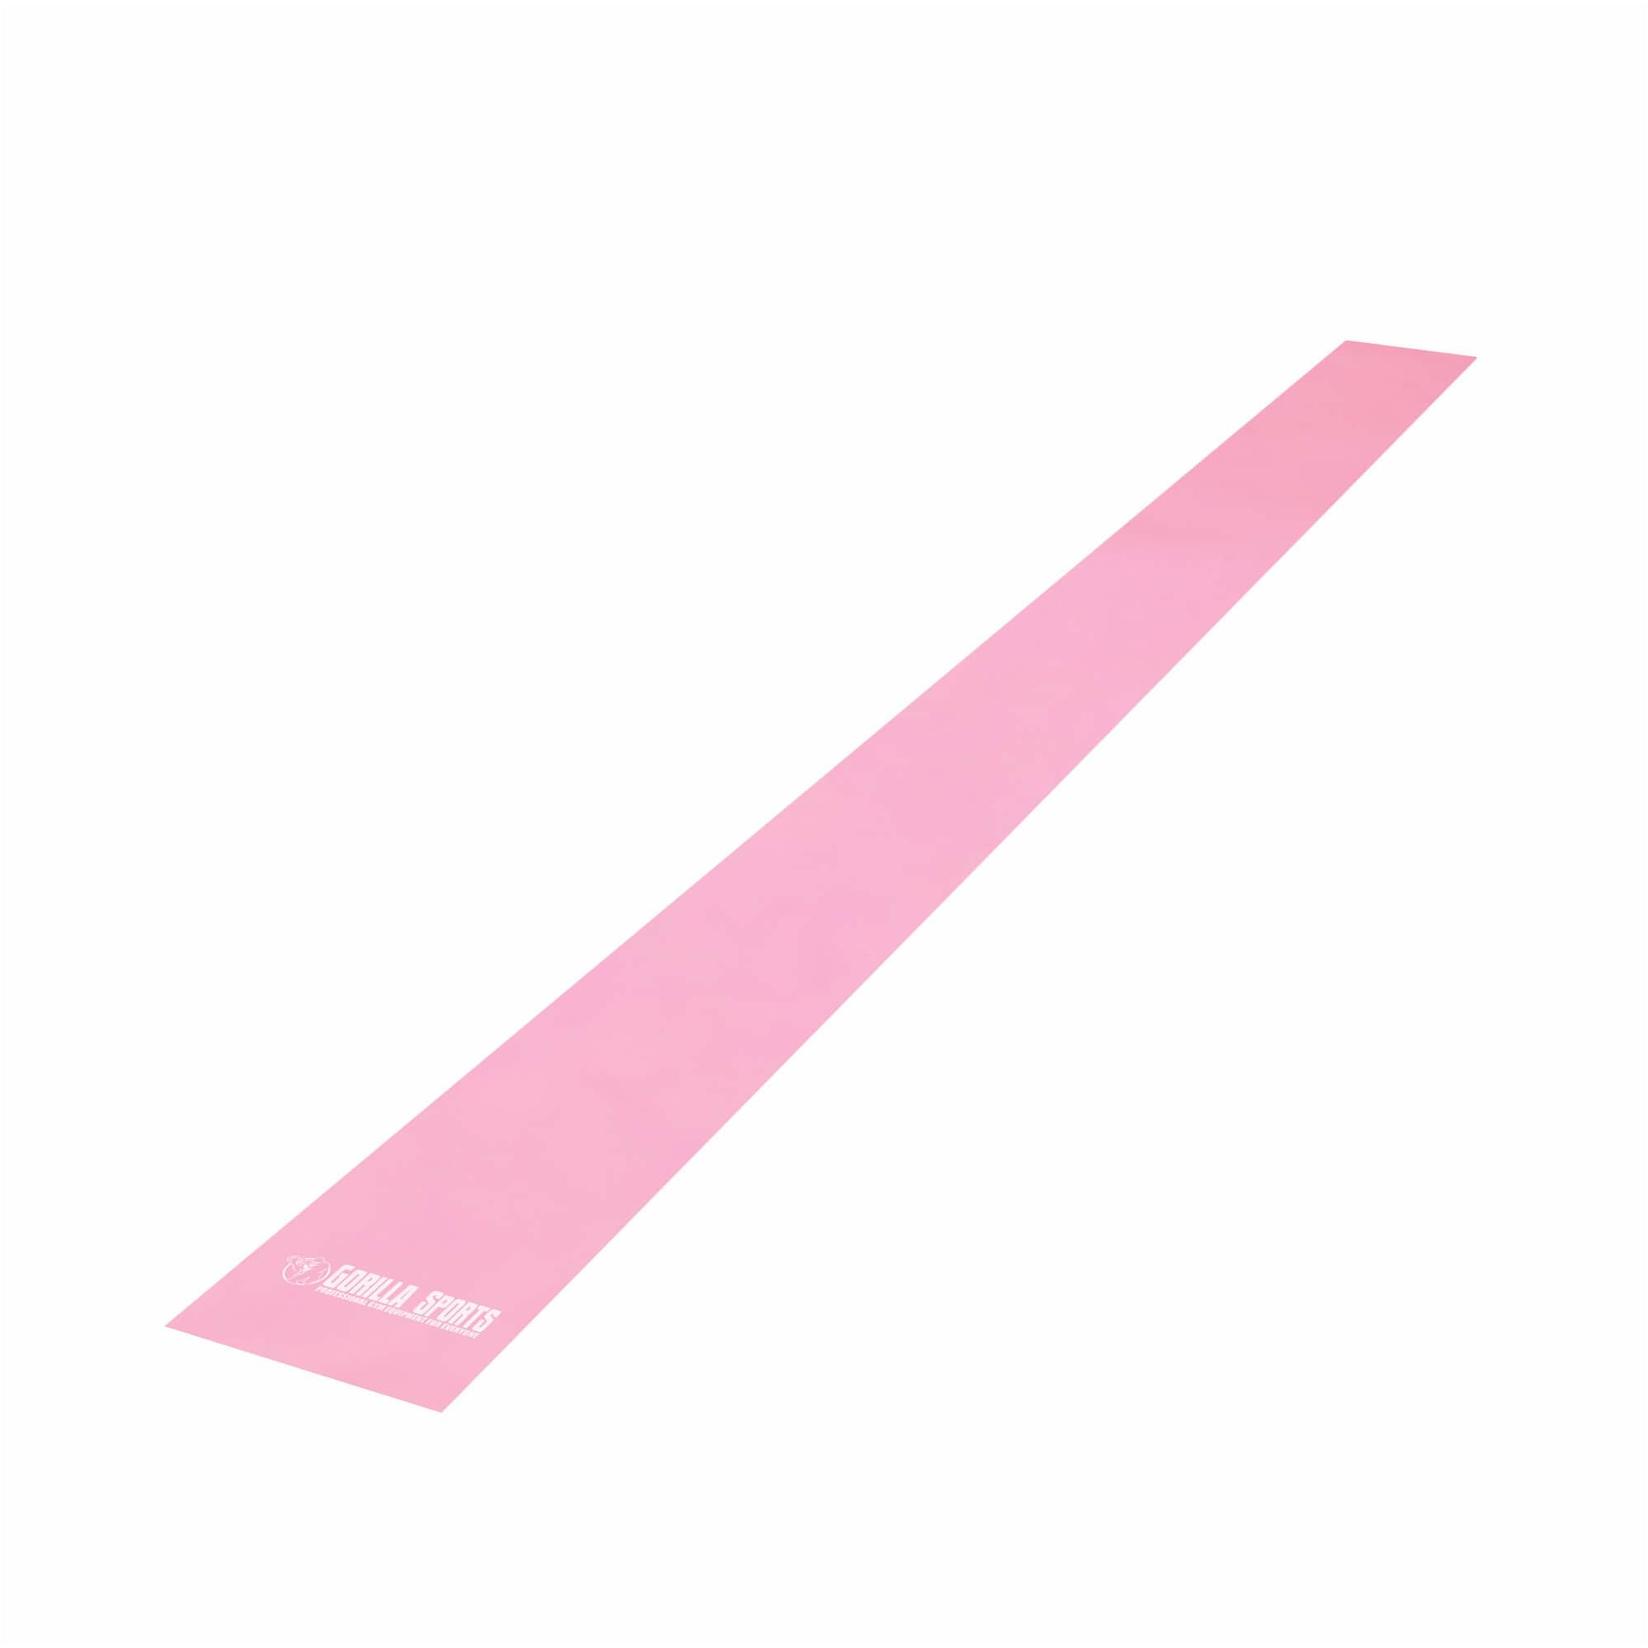 Selected image for GORILLA SPORTS Elastična traka za vežbanje 120 cm roze